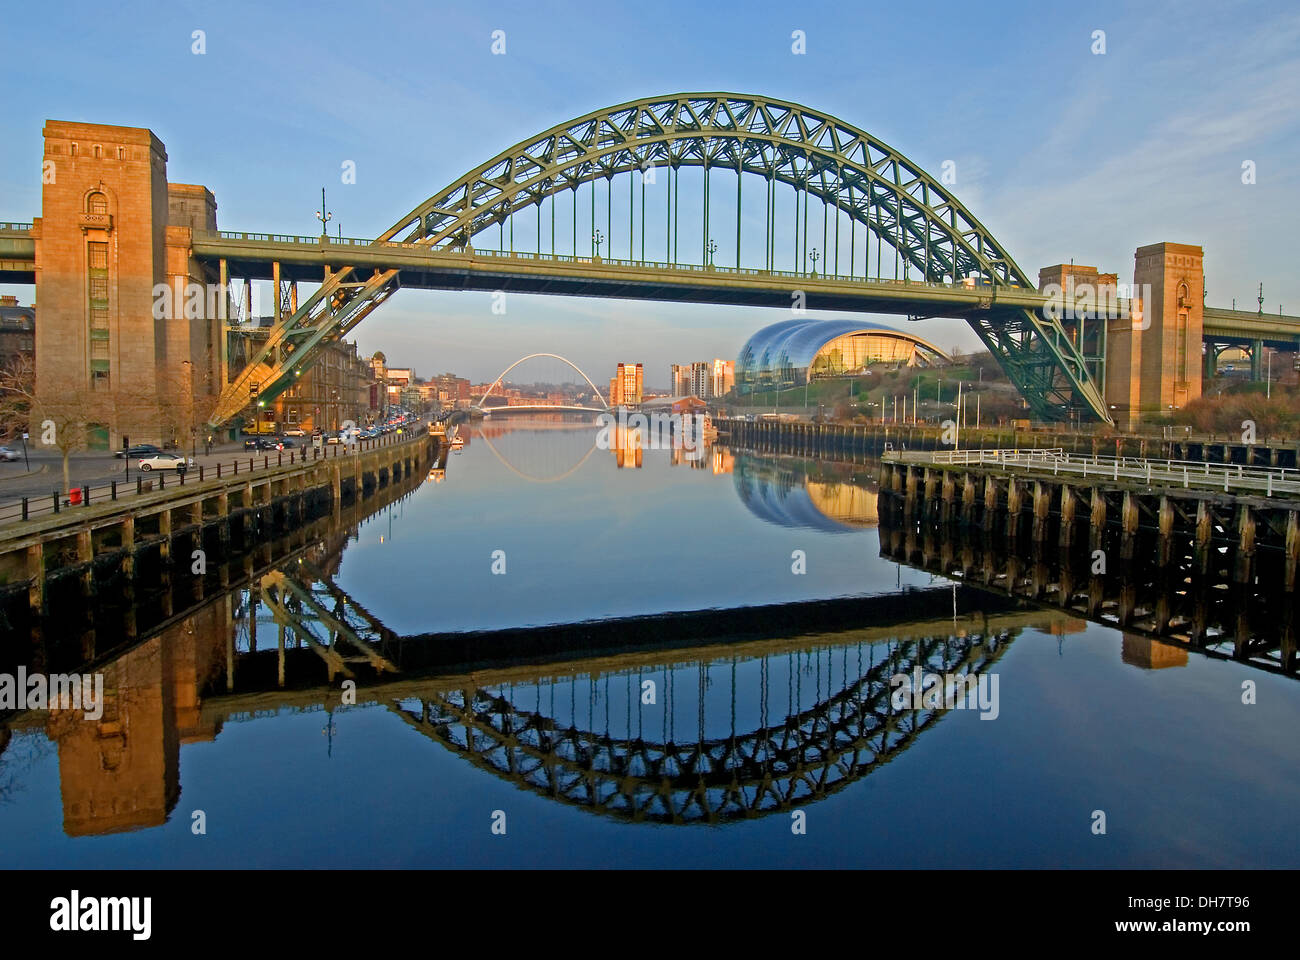 Newcastle Upon Tyne ikonischen Tyne Bridge spiegelt sich in den Fluss Tyne, mit The Sage Gateshead Millennium Bridge. Stockfoto